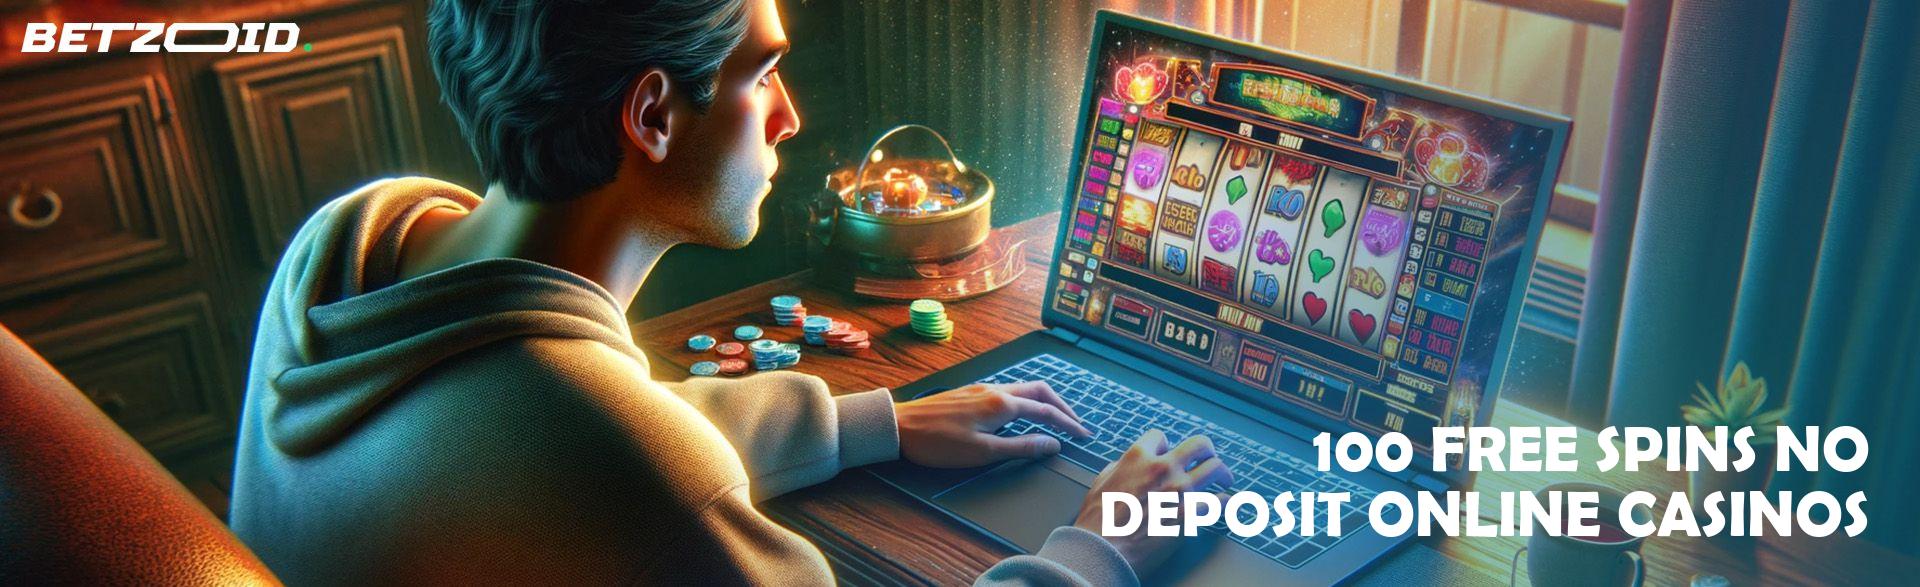 100 Free Spins No Deposit Online Casinos.